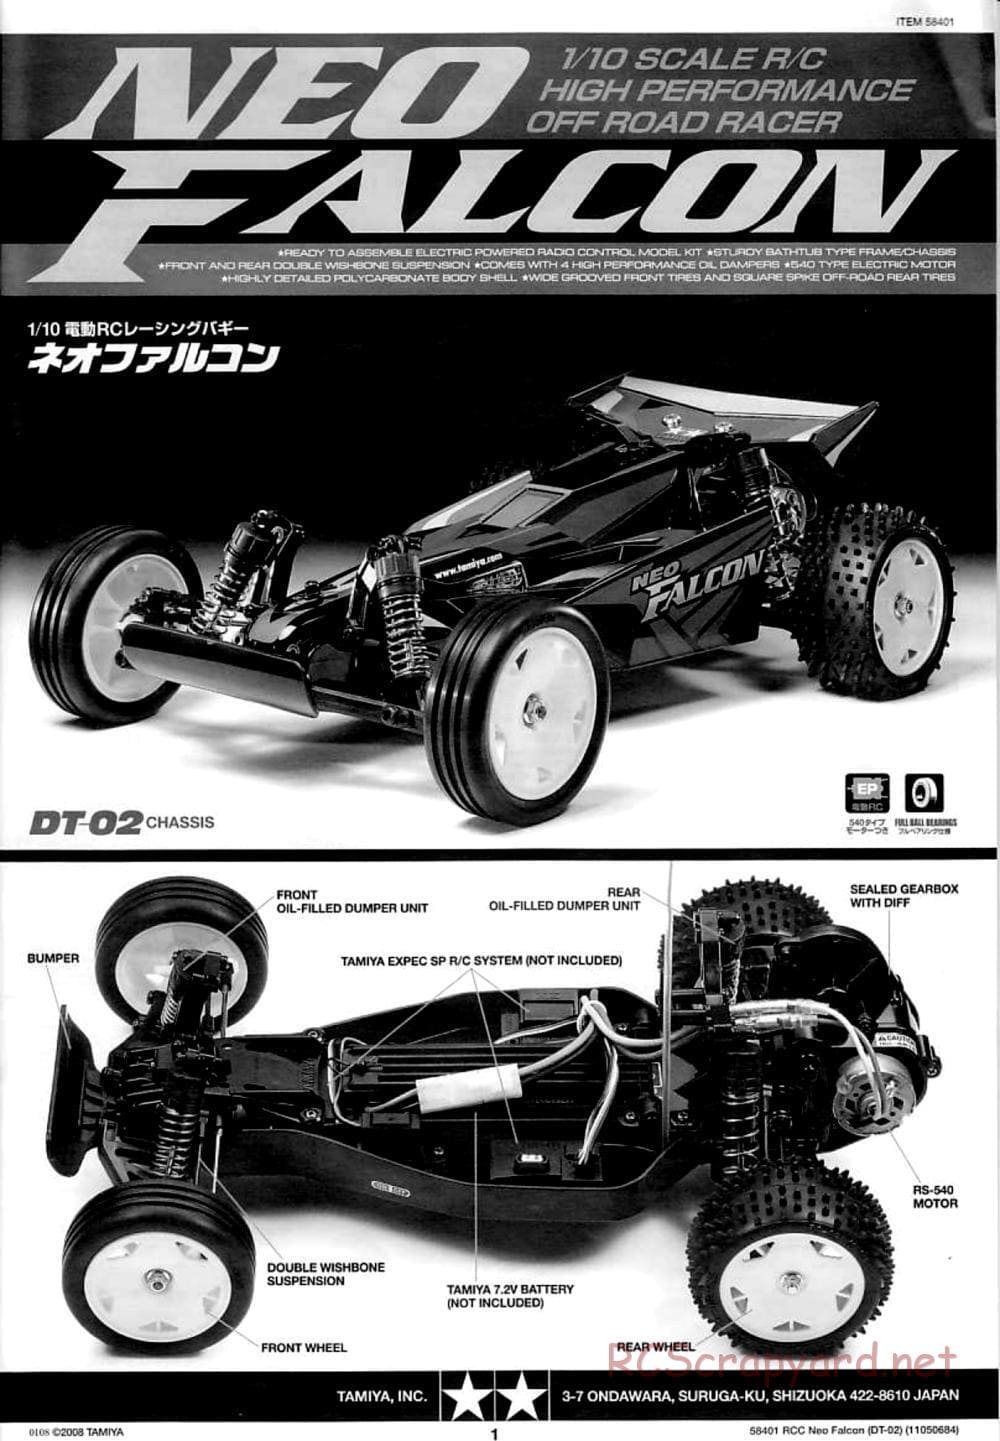 Tamiya - Neo Falcon Chassis - Manual - Page 1